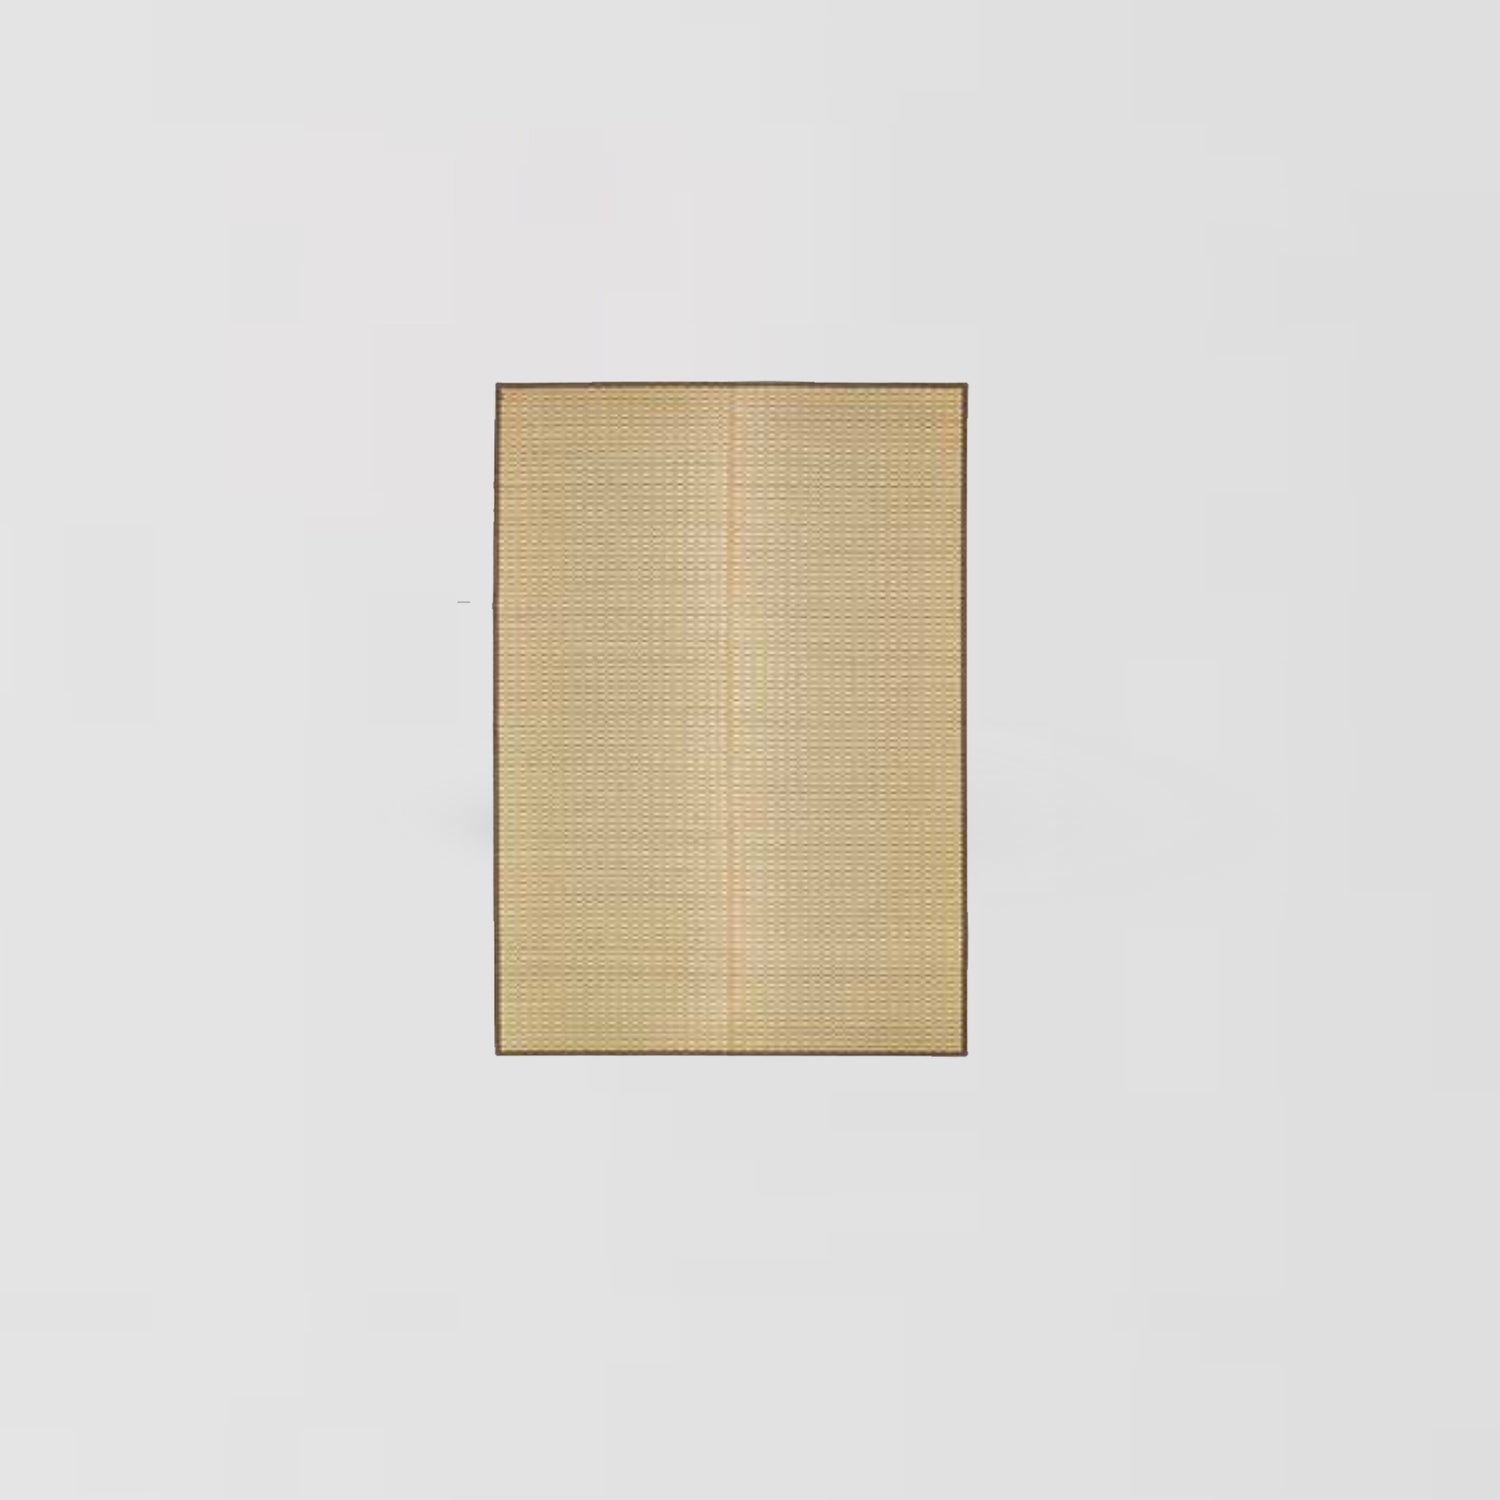 Tatami地毯 - 九州紋織